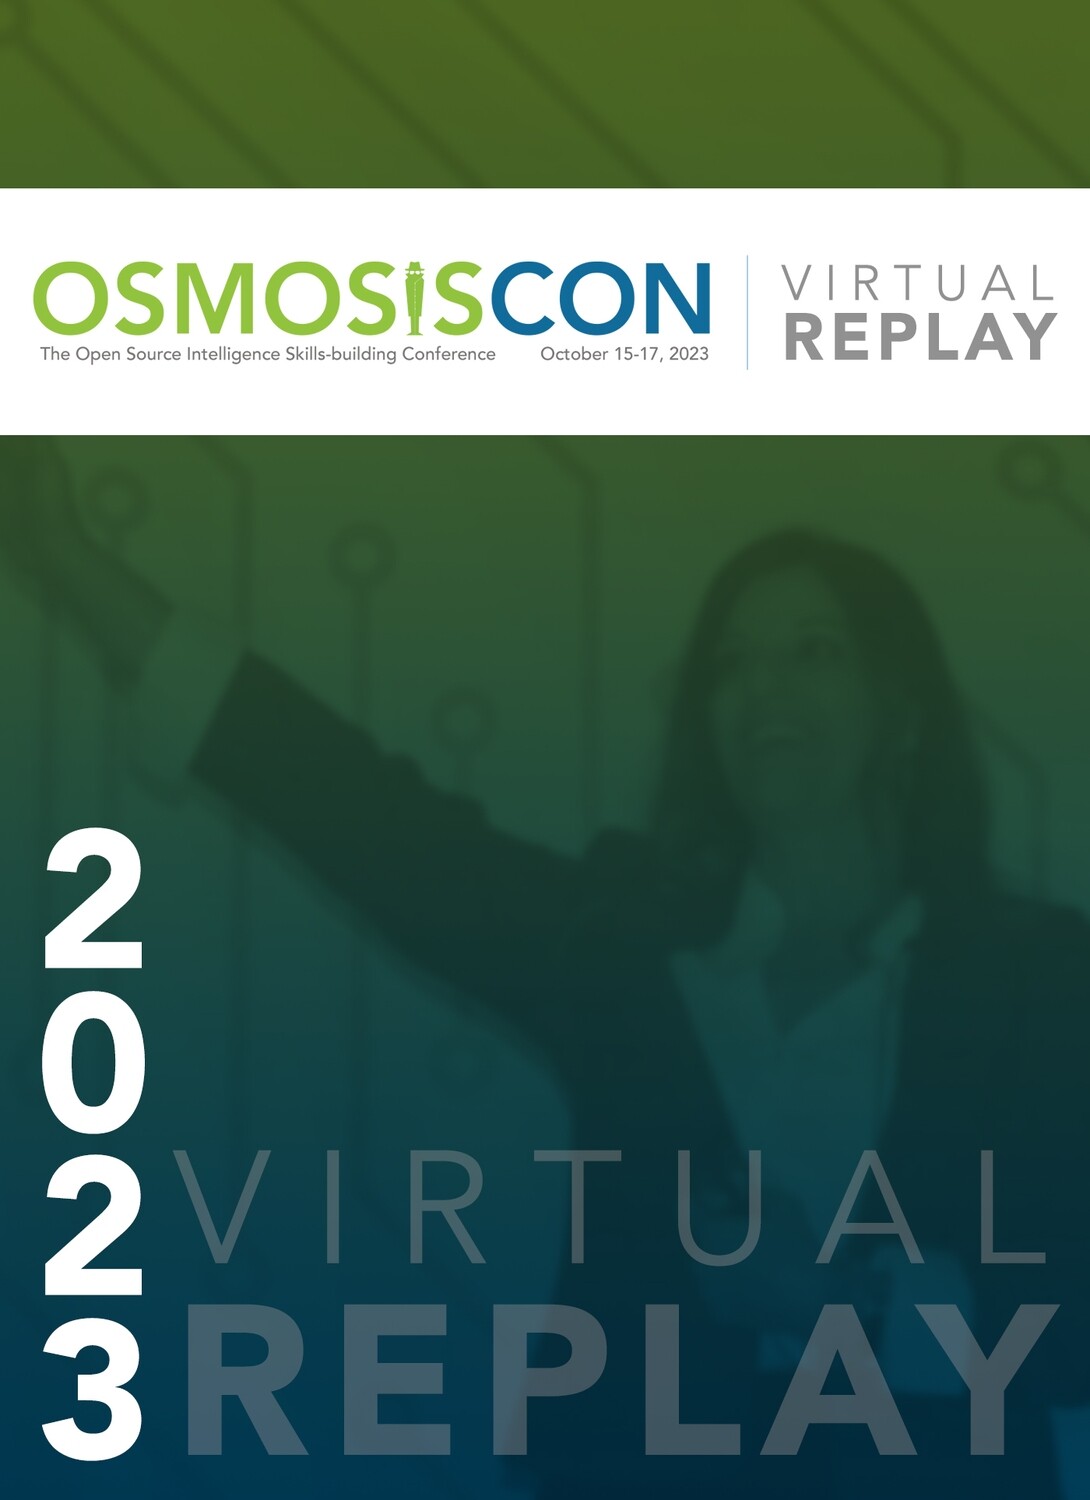 OSMOSISCon 2023 Virtual Replay